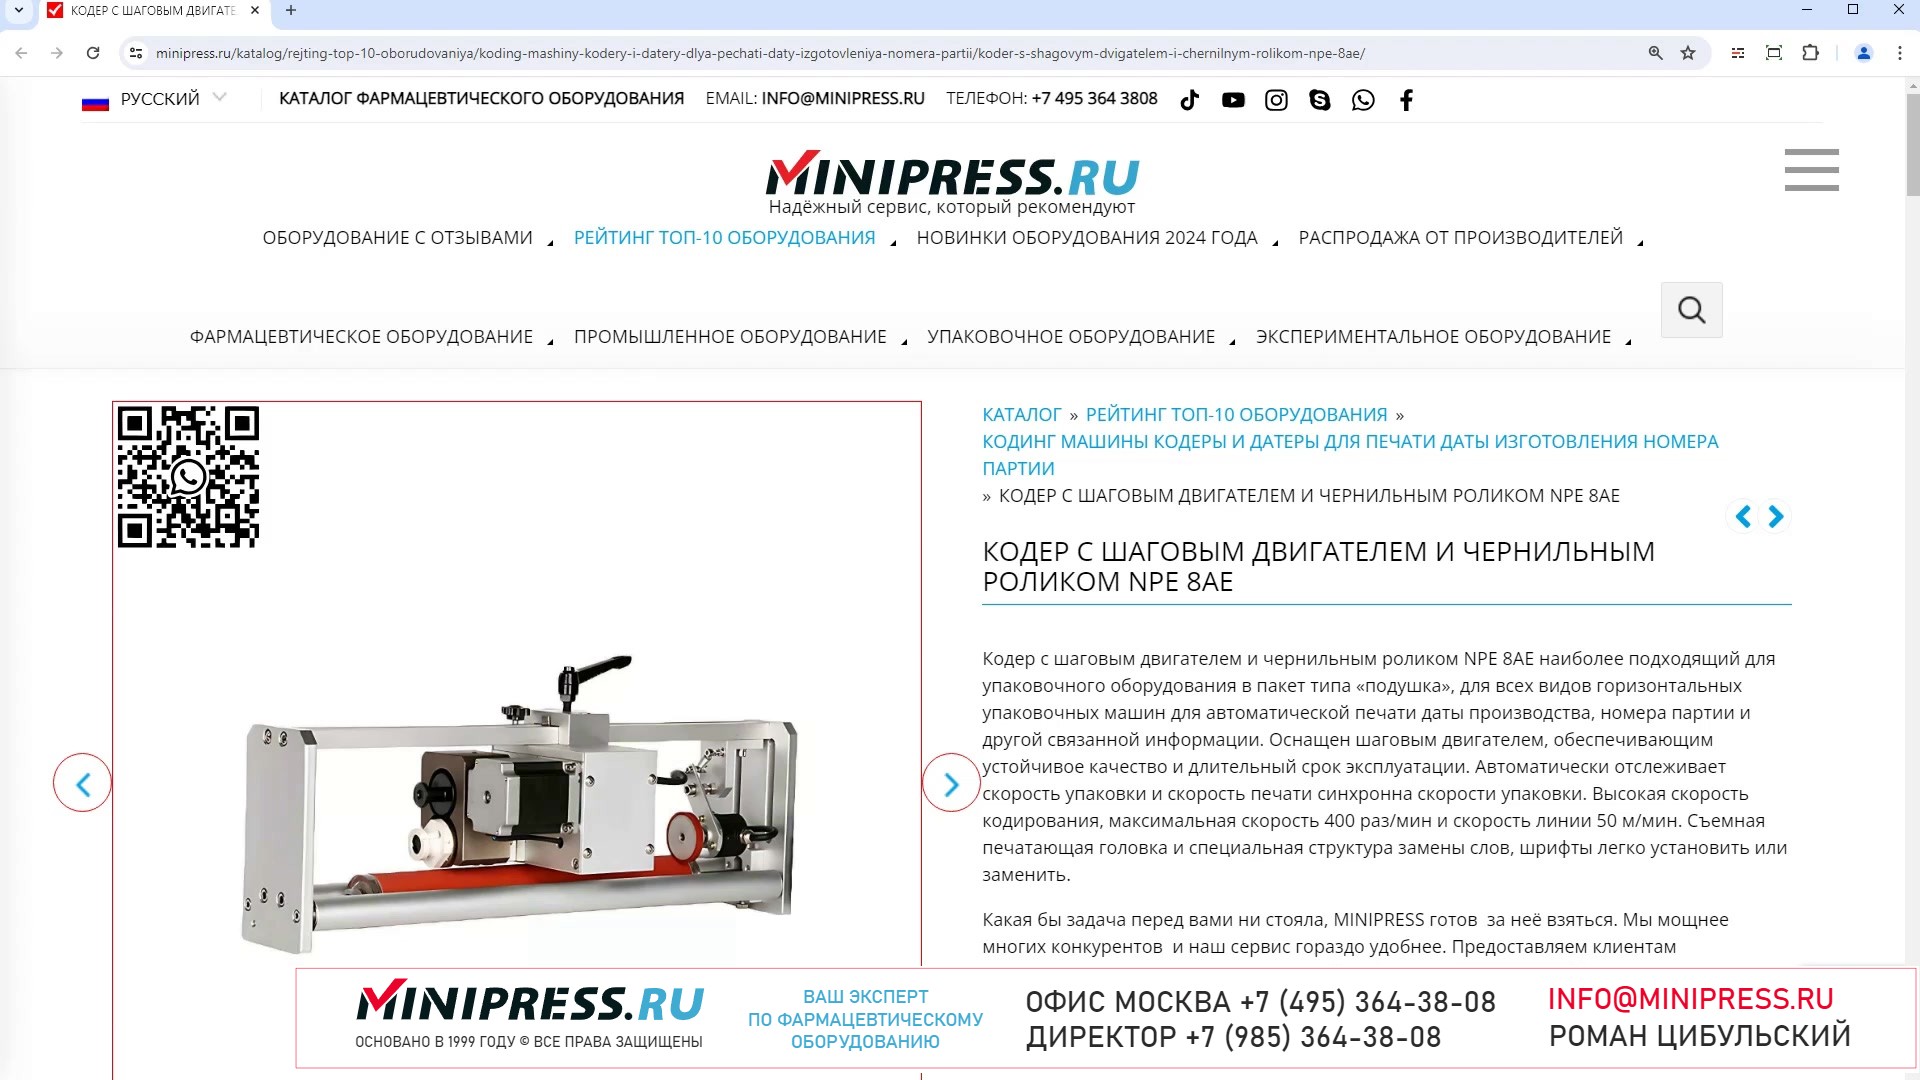 Minipress.ru Кодер с шаговым двигателем и чернильным роликом NPE 8AE